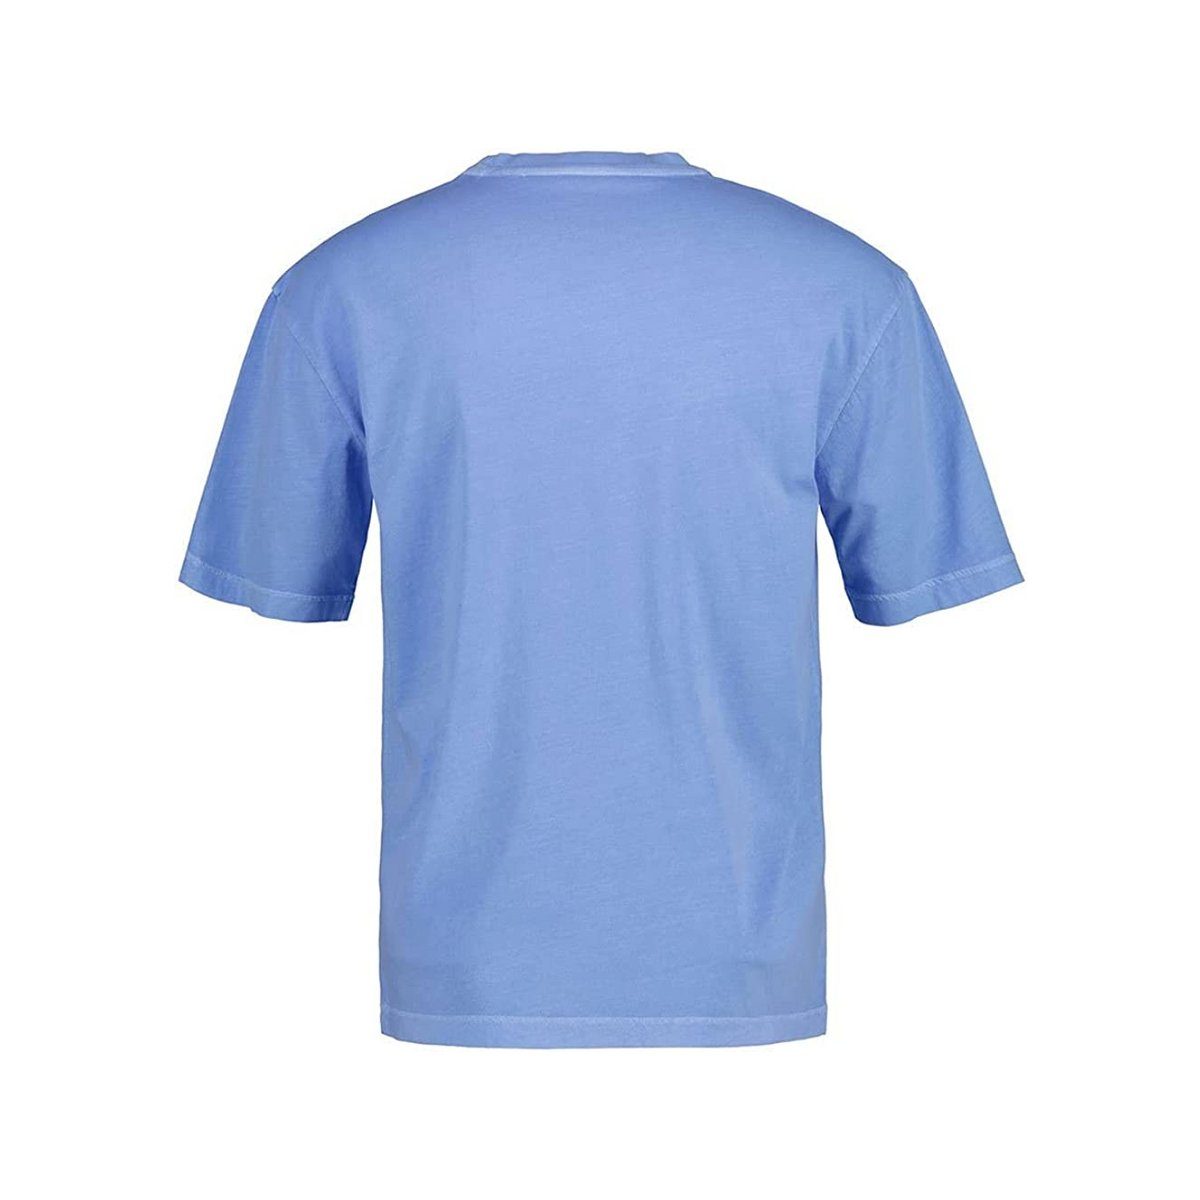 textil T-Shirt BLUE blau GENTLE passform Gant (1-tlg)